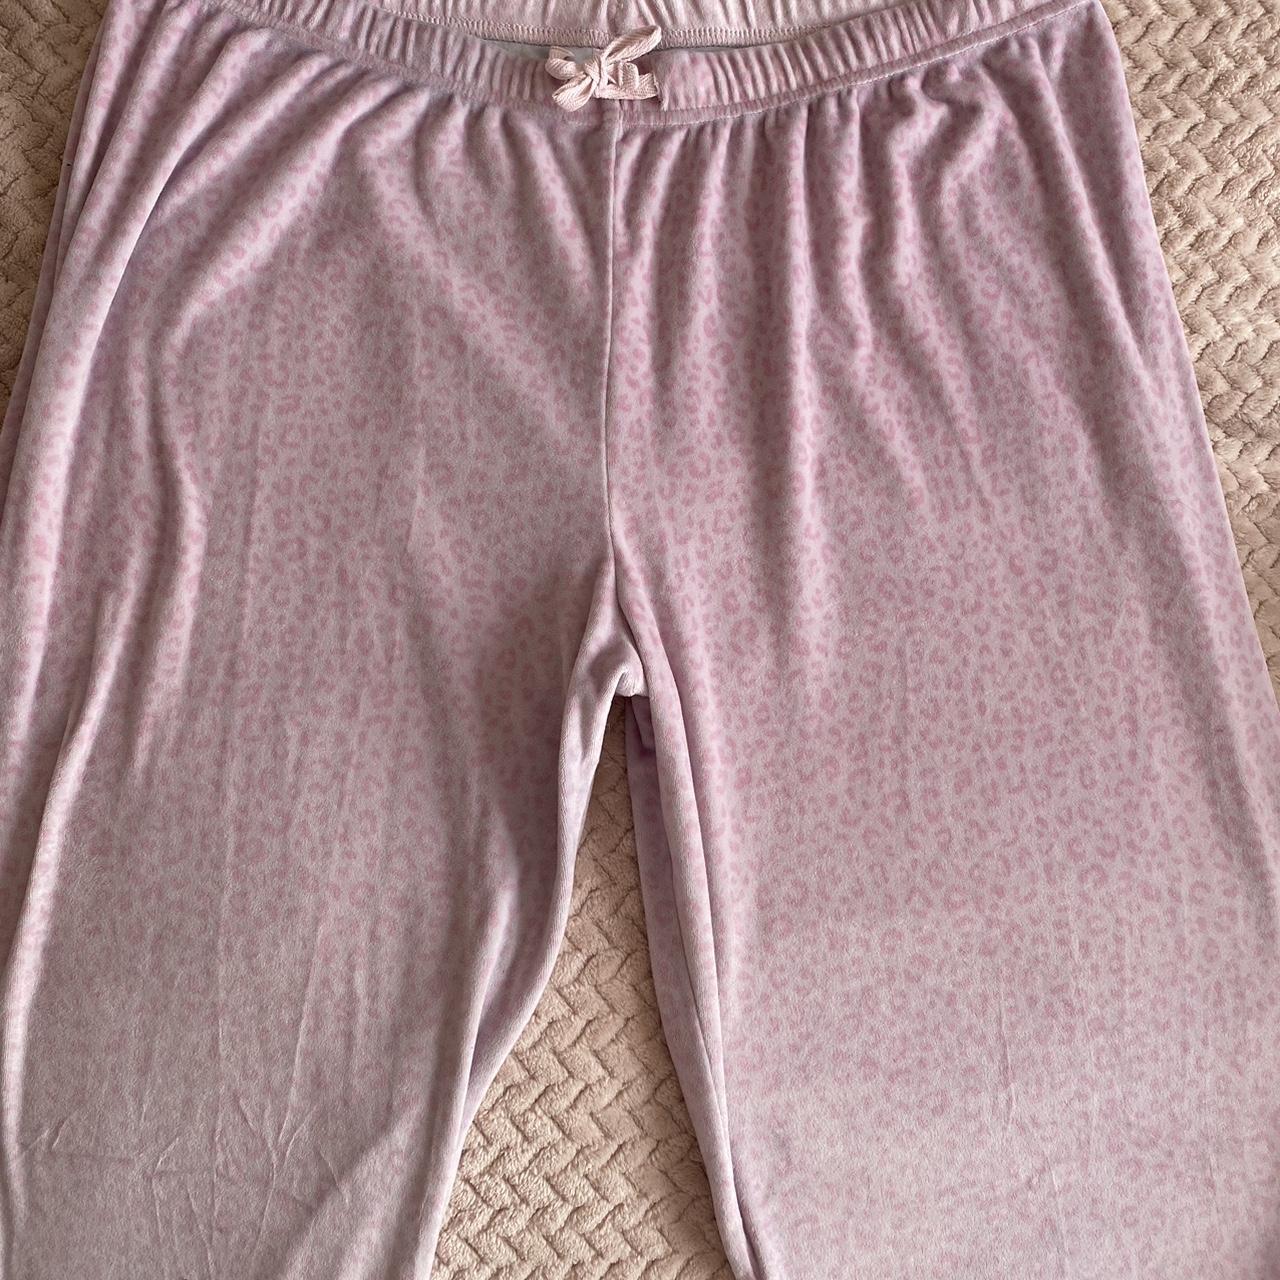 Juicy couture sleepwear pajama - Gem